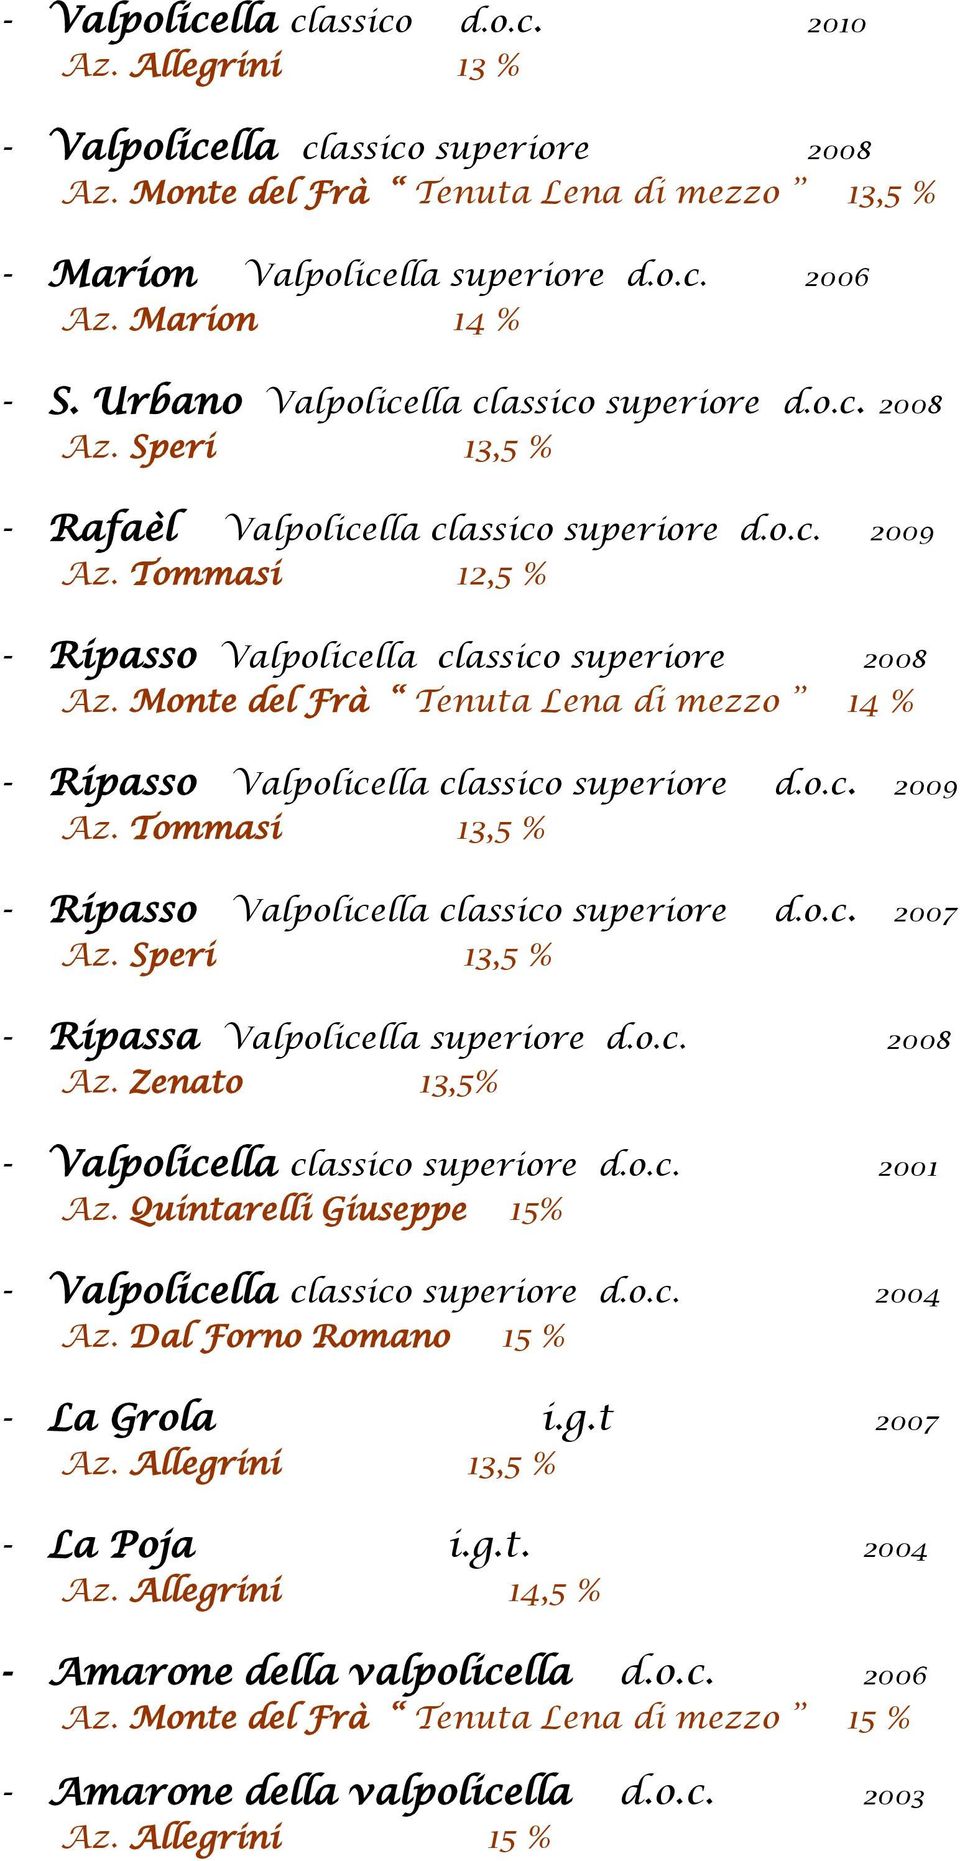 Tommasi 12,5 % - Ripasso Valpolicella classico superiore 2008 Az. Monte del Frà Tenuta Lena di mezzo 14 % - Ripasso Valpolicella classico superiore d.o.c. 2009 Az.